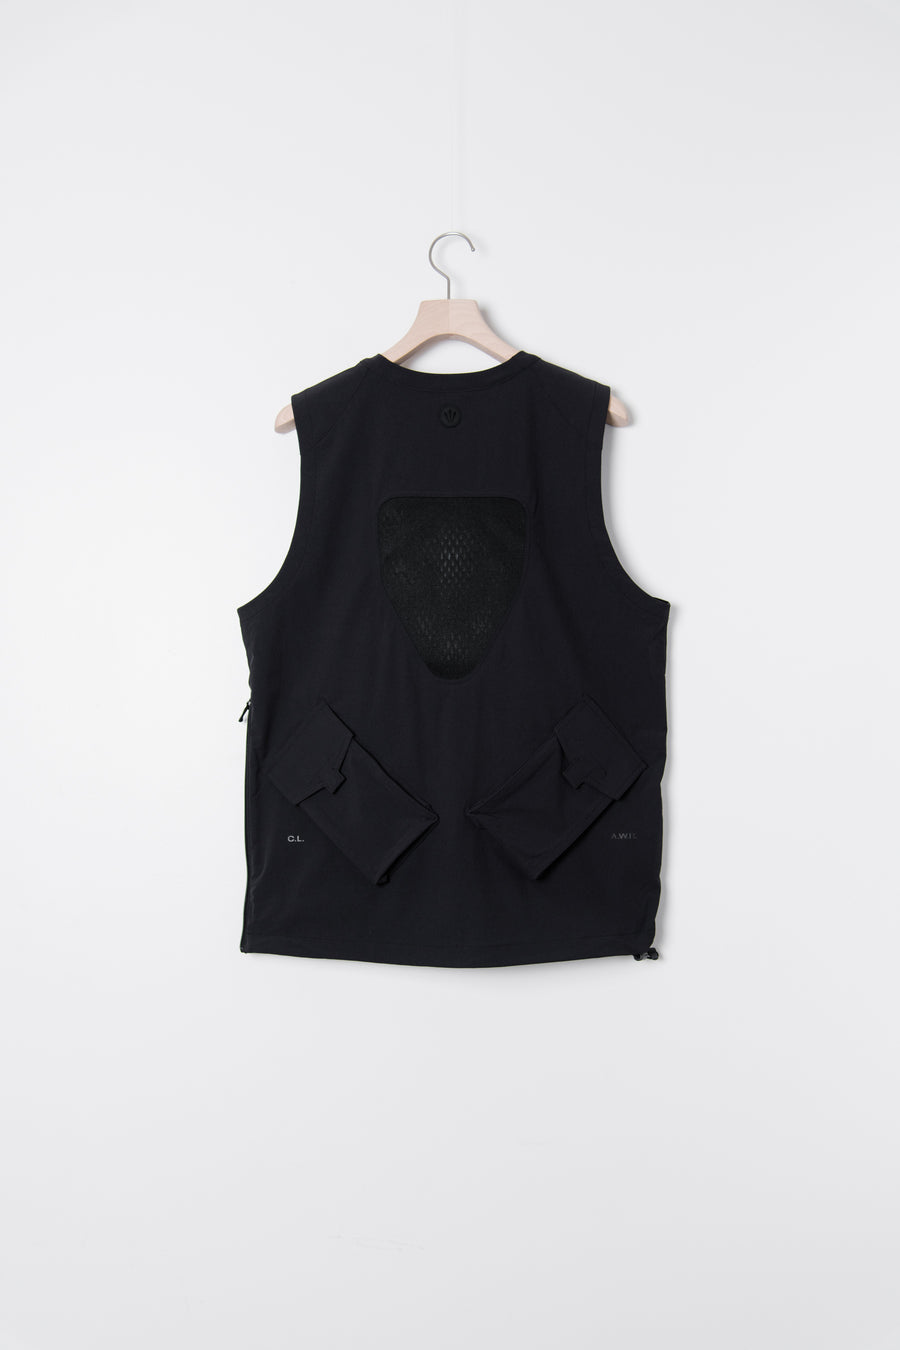 NRG Woven Vest Black DJ5582-010 (LAUNCH PRODUCT)